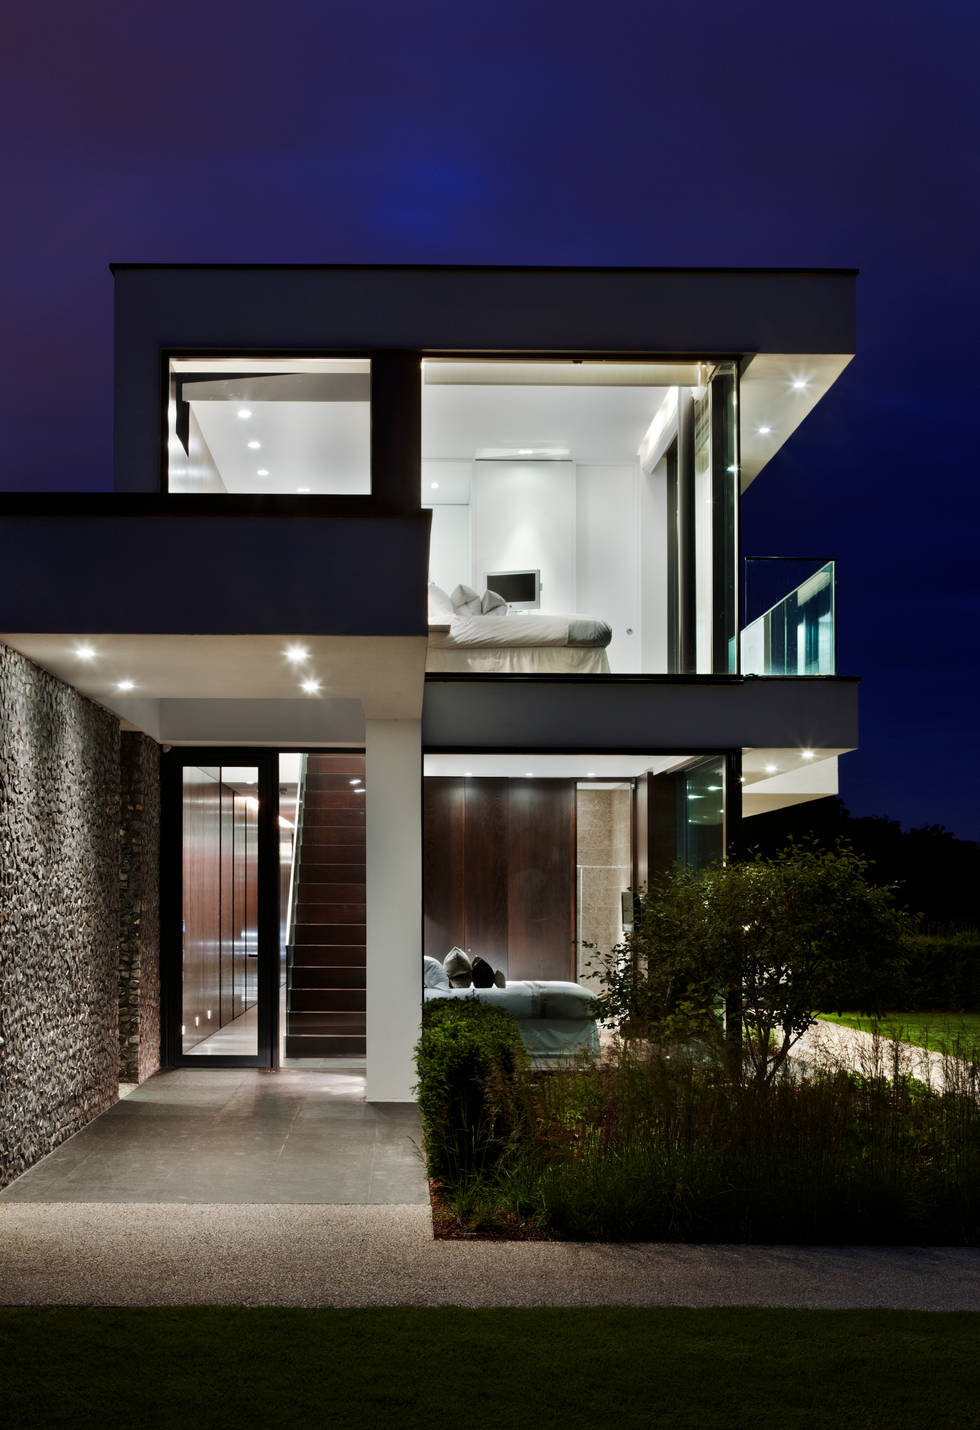 Потрясающий дом в стиле минимализм- фотографии
				